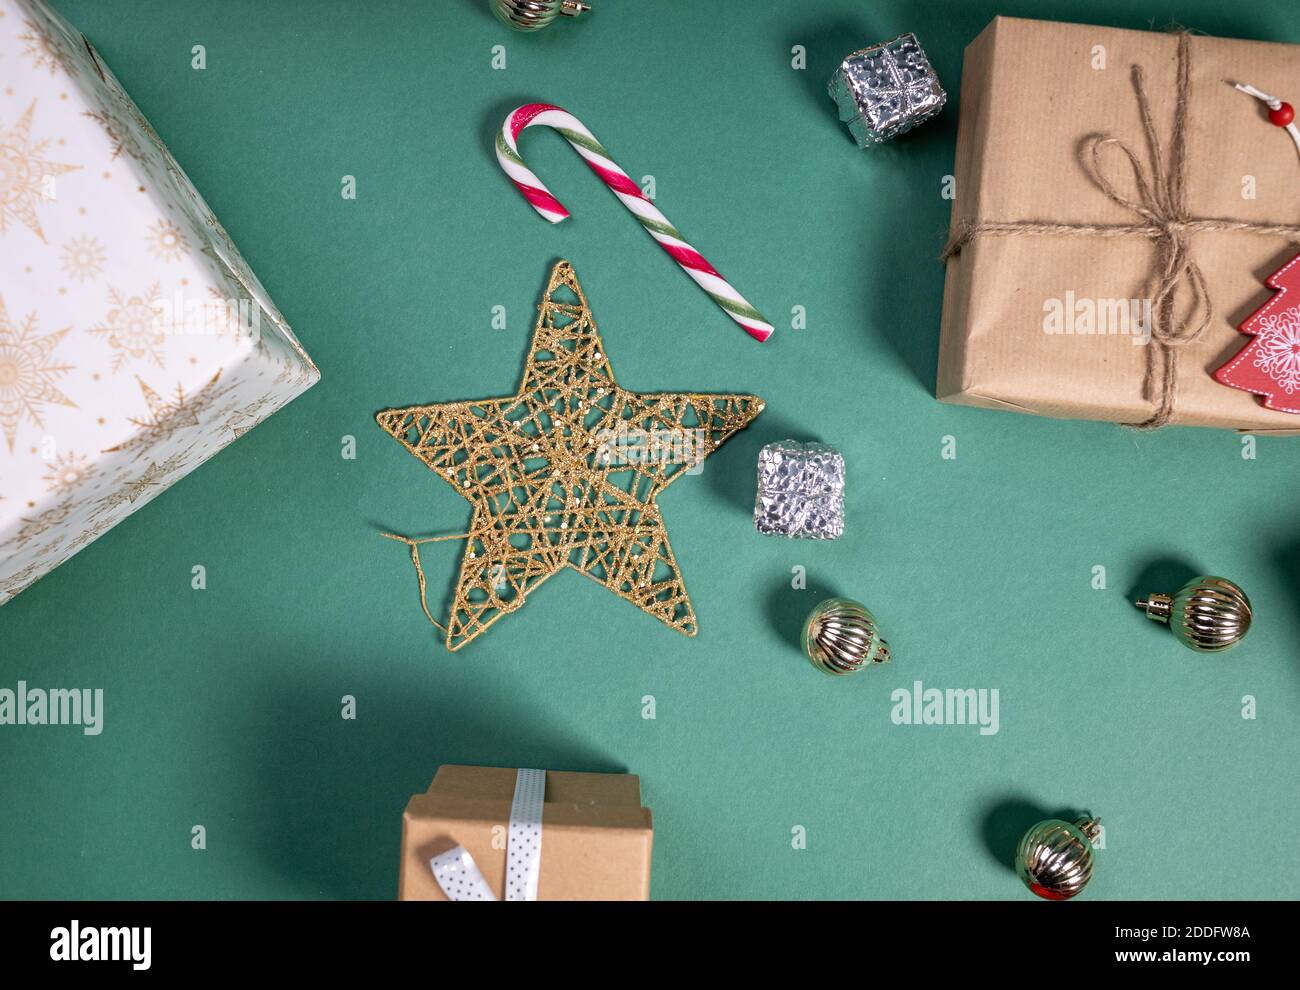 piso con regalos de navidad y decoración festiva Foto de stock